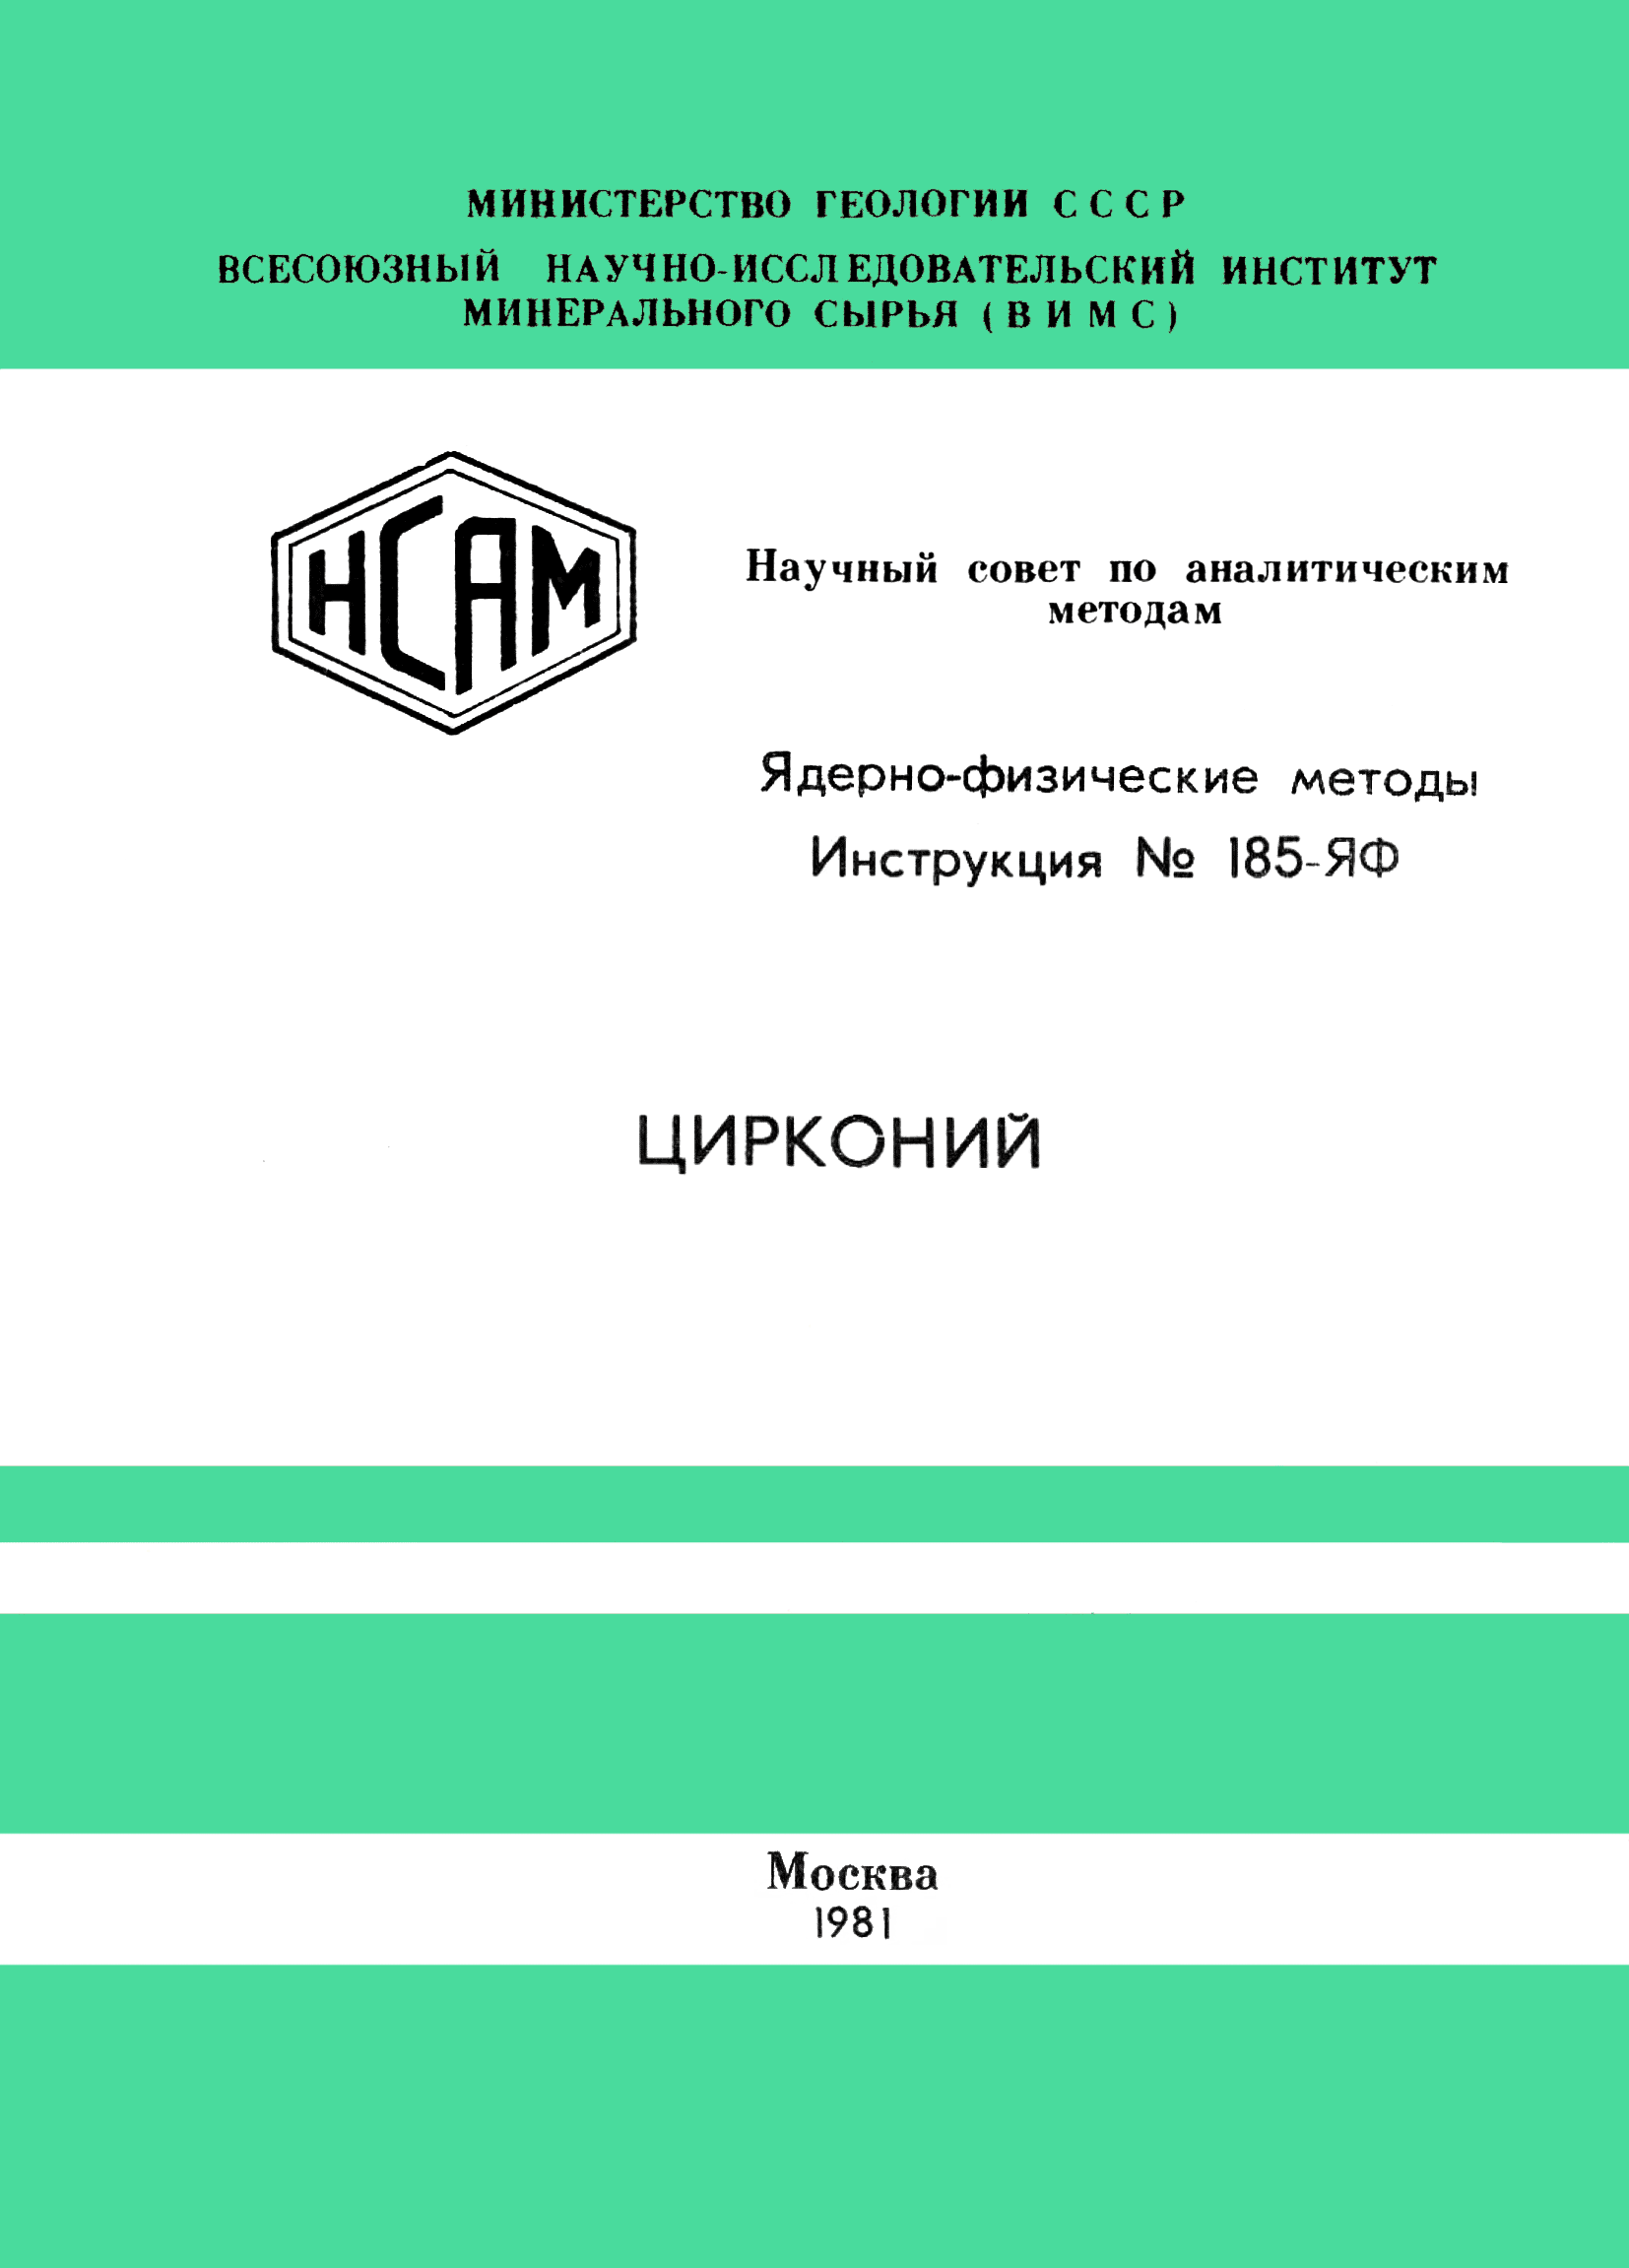 Инструкция НСАМ 185-ЯФ